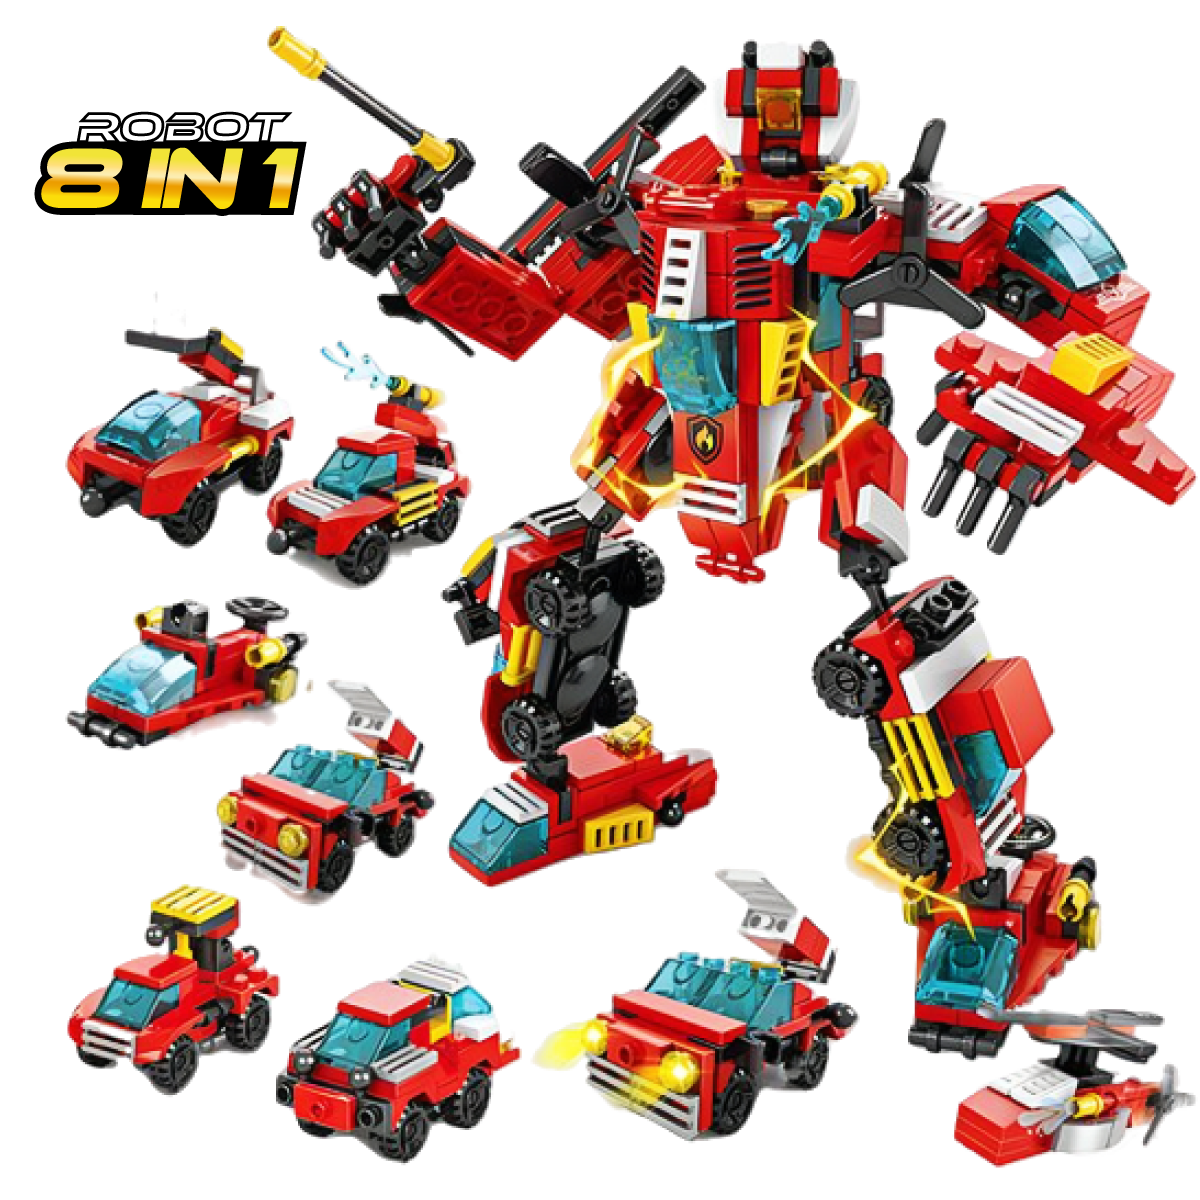 QUCHIQ Transformers Roboter 356 Bausatz Bausteine